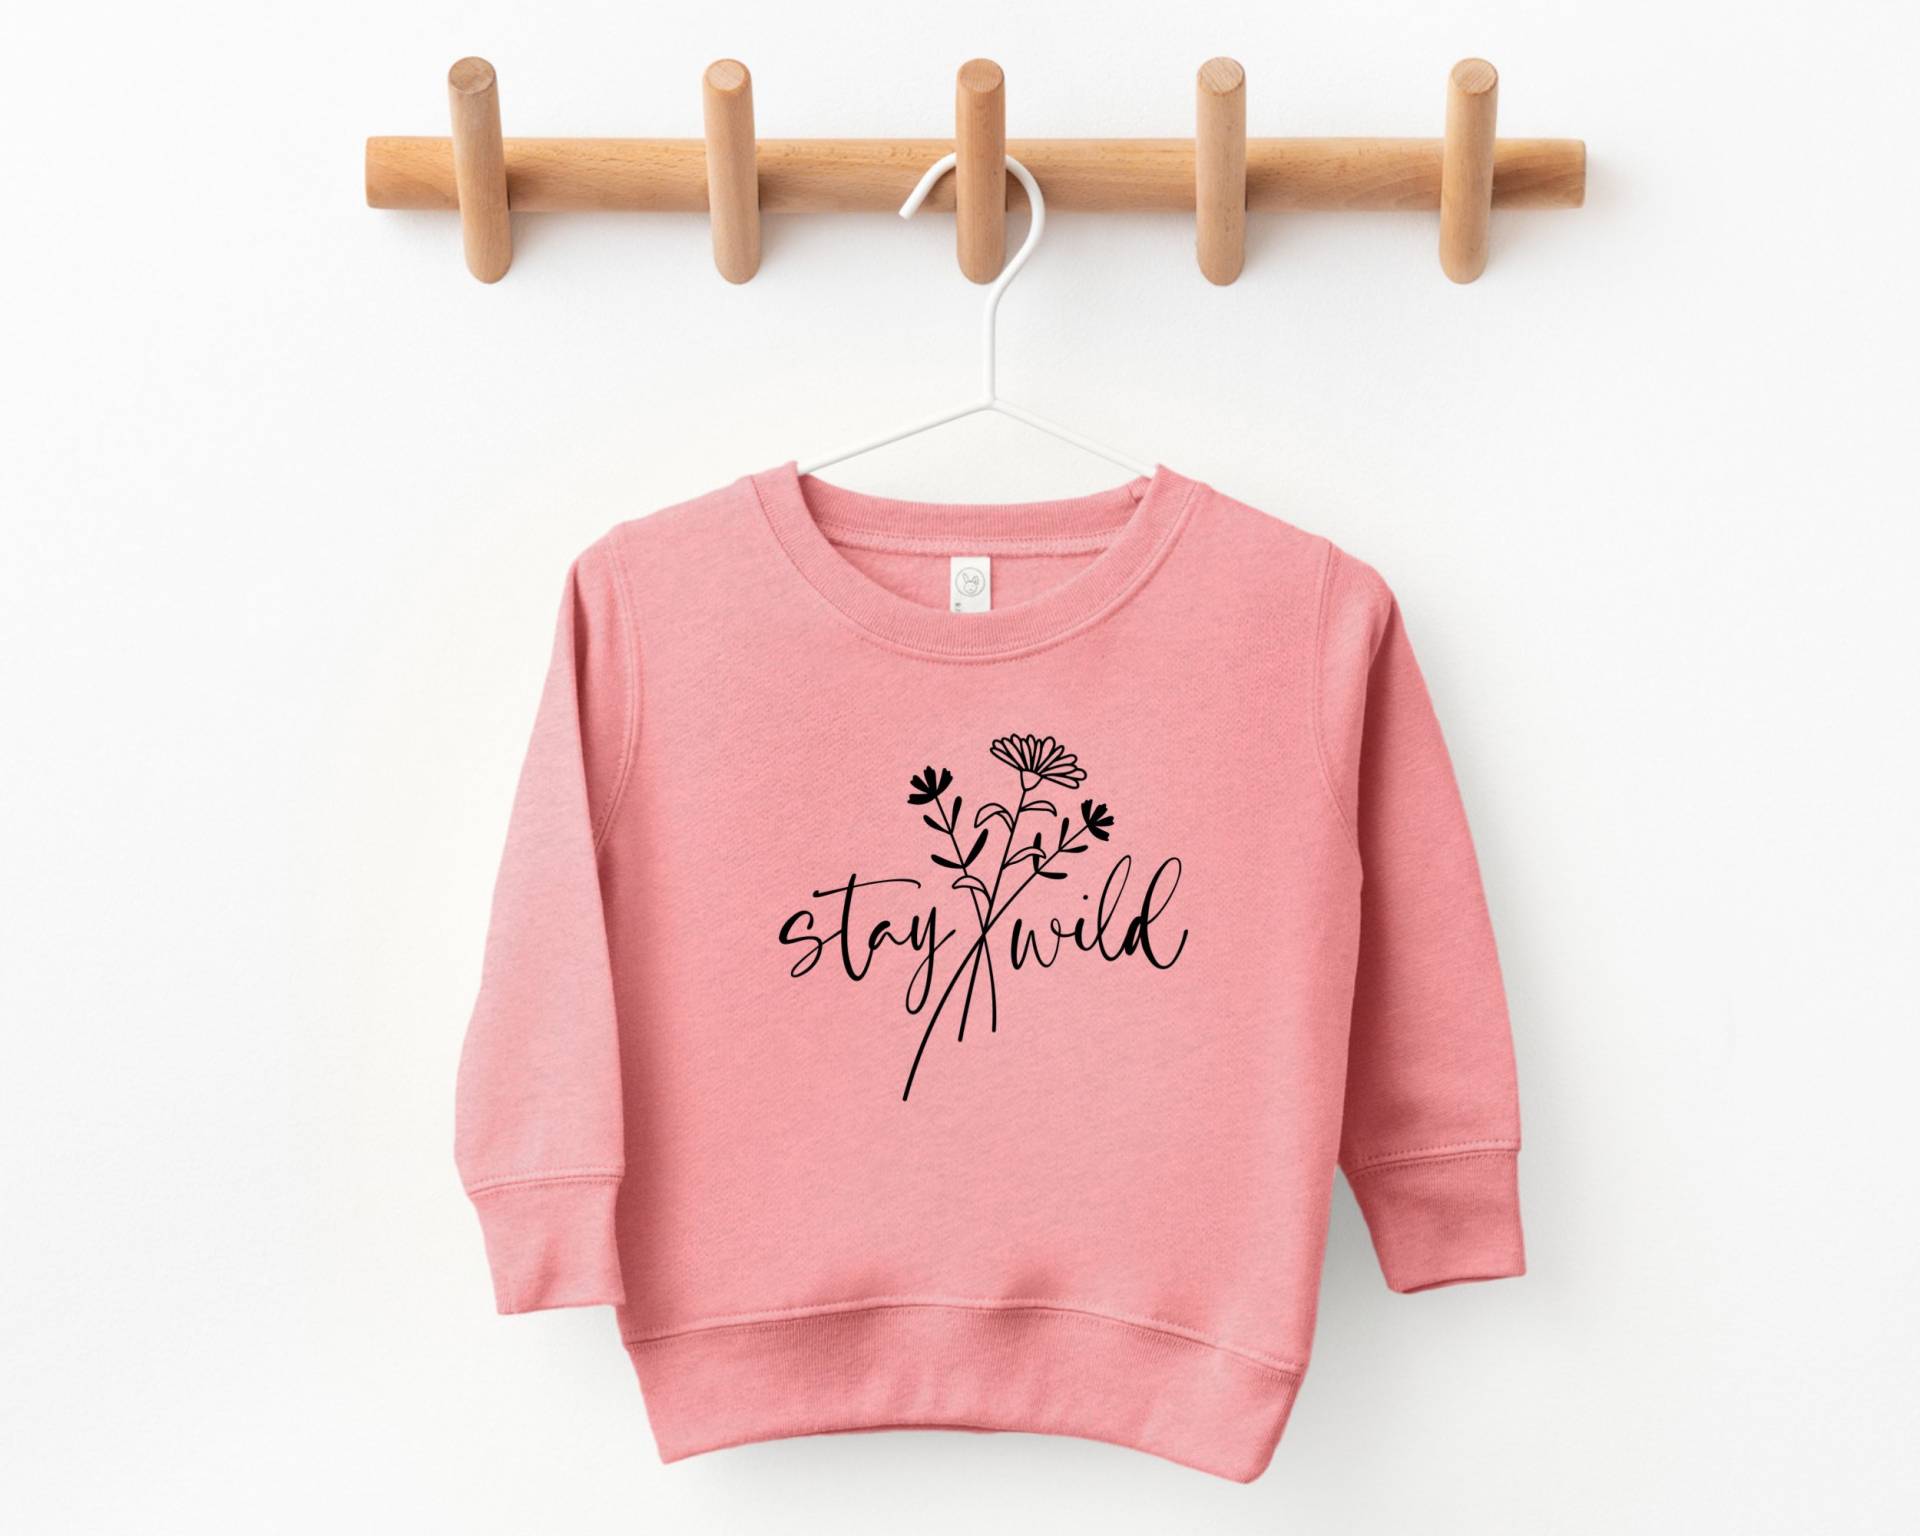 Bleib Wild, Shirts Für Mädchen, Kleinkind Sweatshirt, Mädchen Shirt, Grafik T-Shirt, Kleines Geschenk, Blumen Sweatshirt von TheChelleShoppe